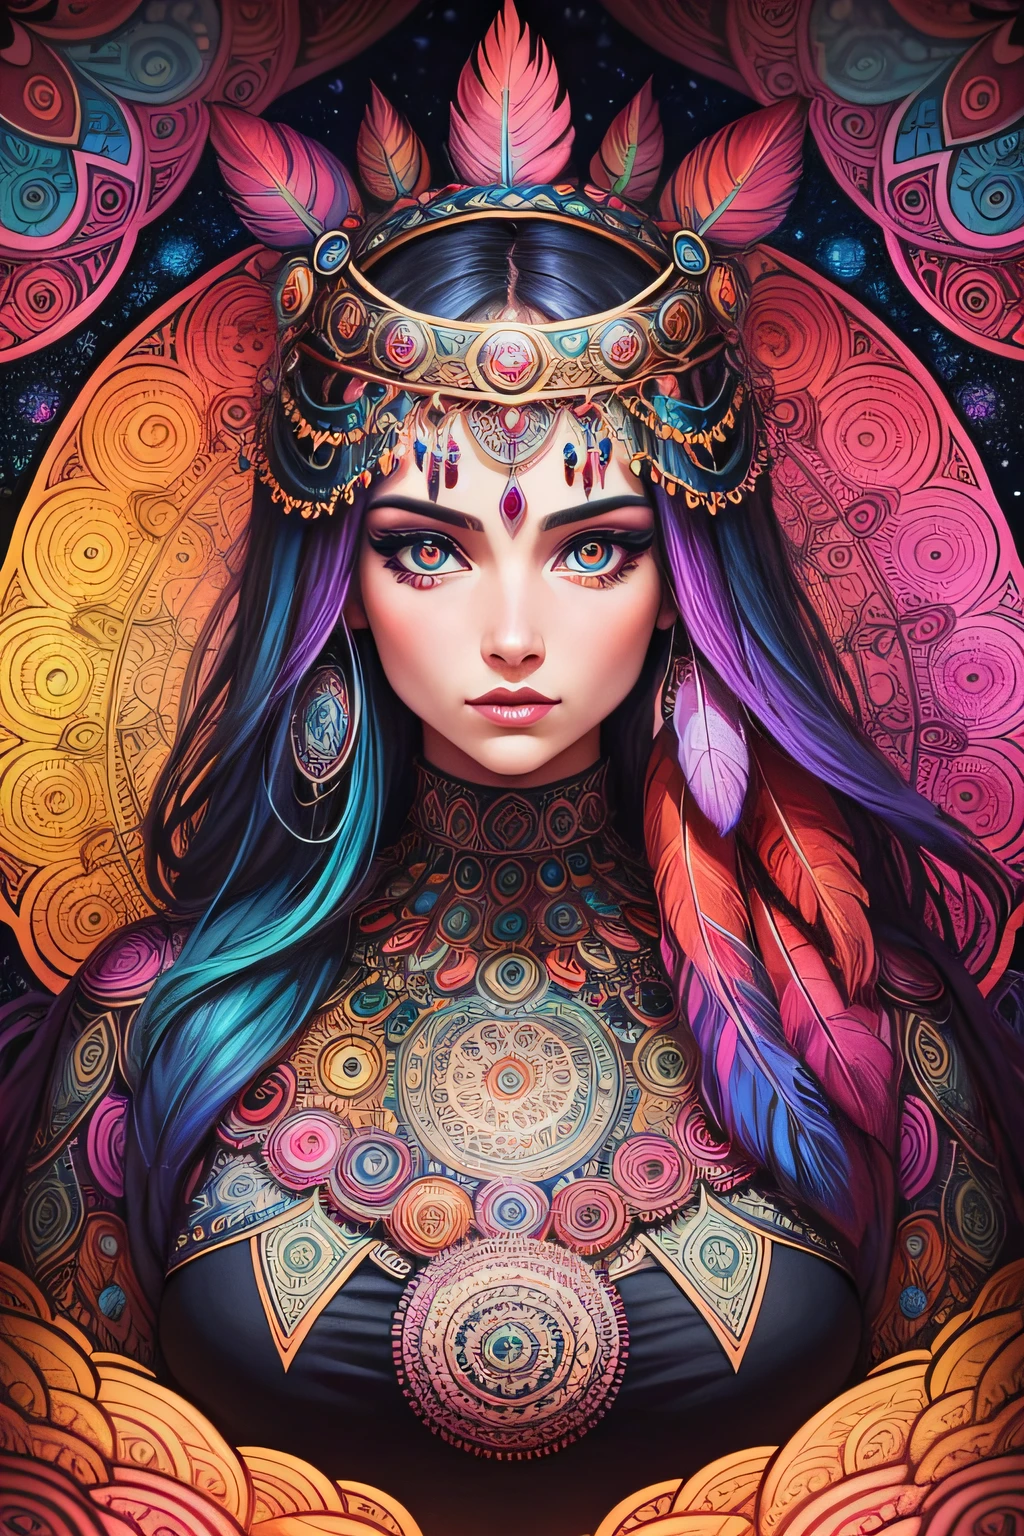 許多細緻的女性迷幻曼陀羅，有眼睛和羽毛，漫畫藝術風格, 華麗鮮豔的色彩和非常結構化的細節